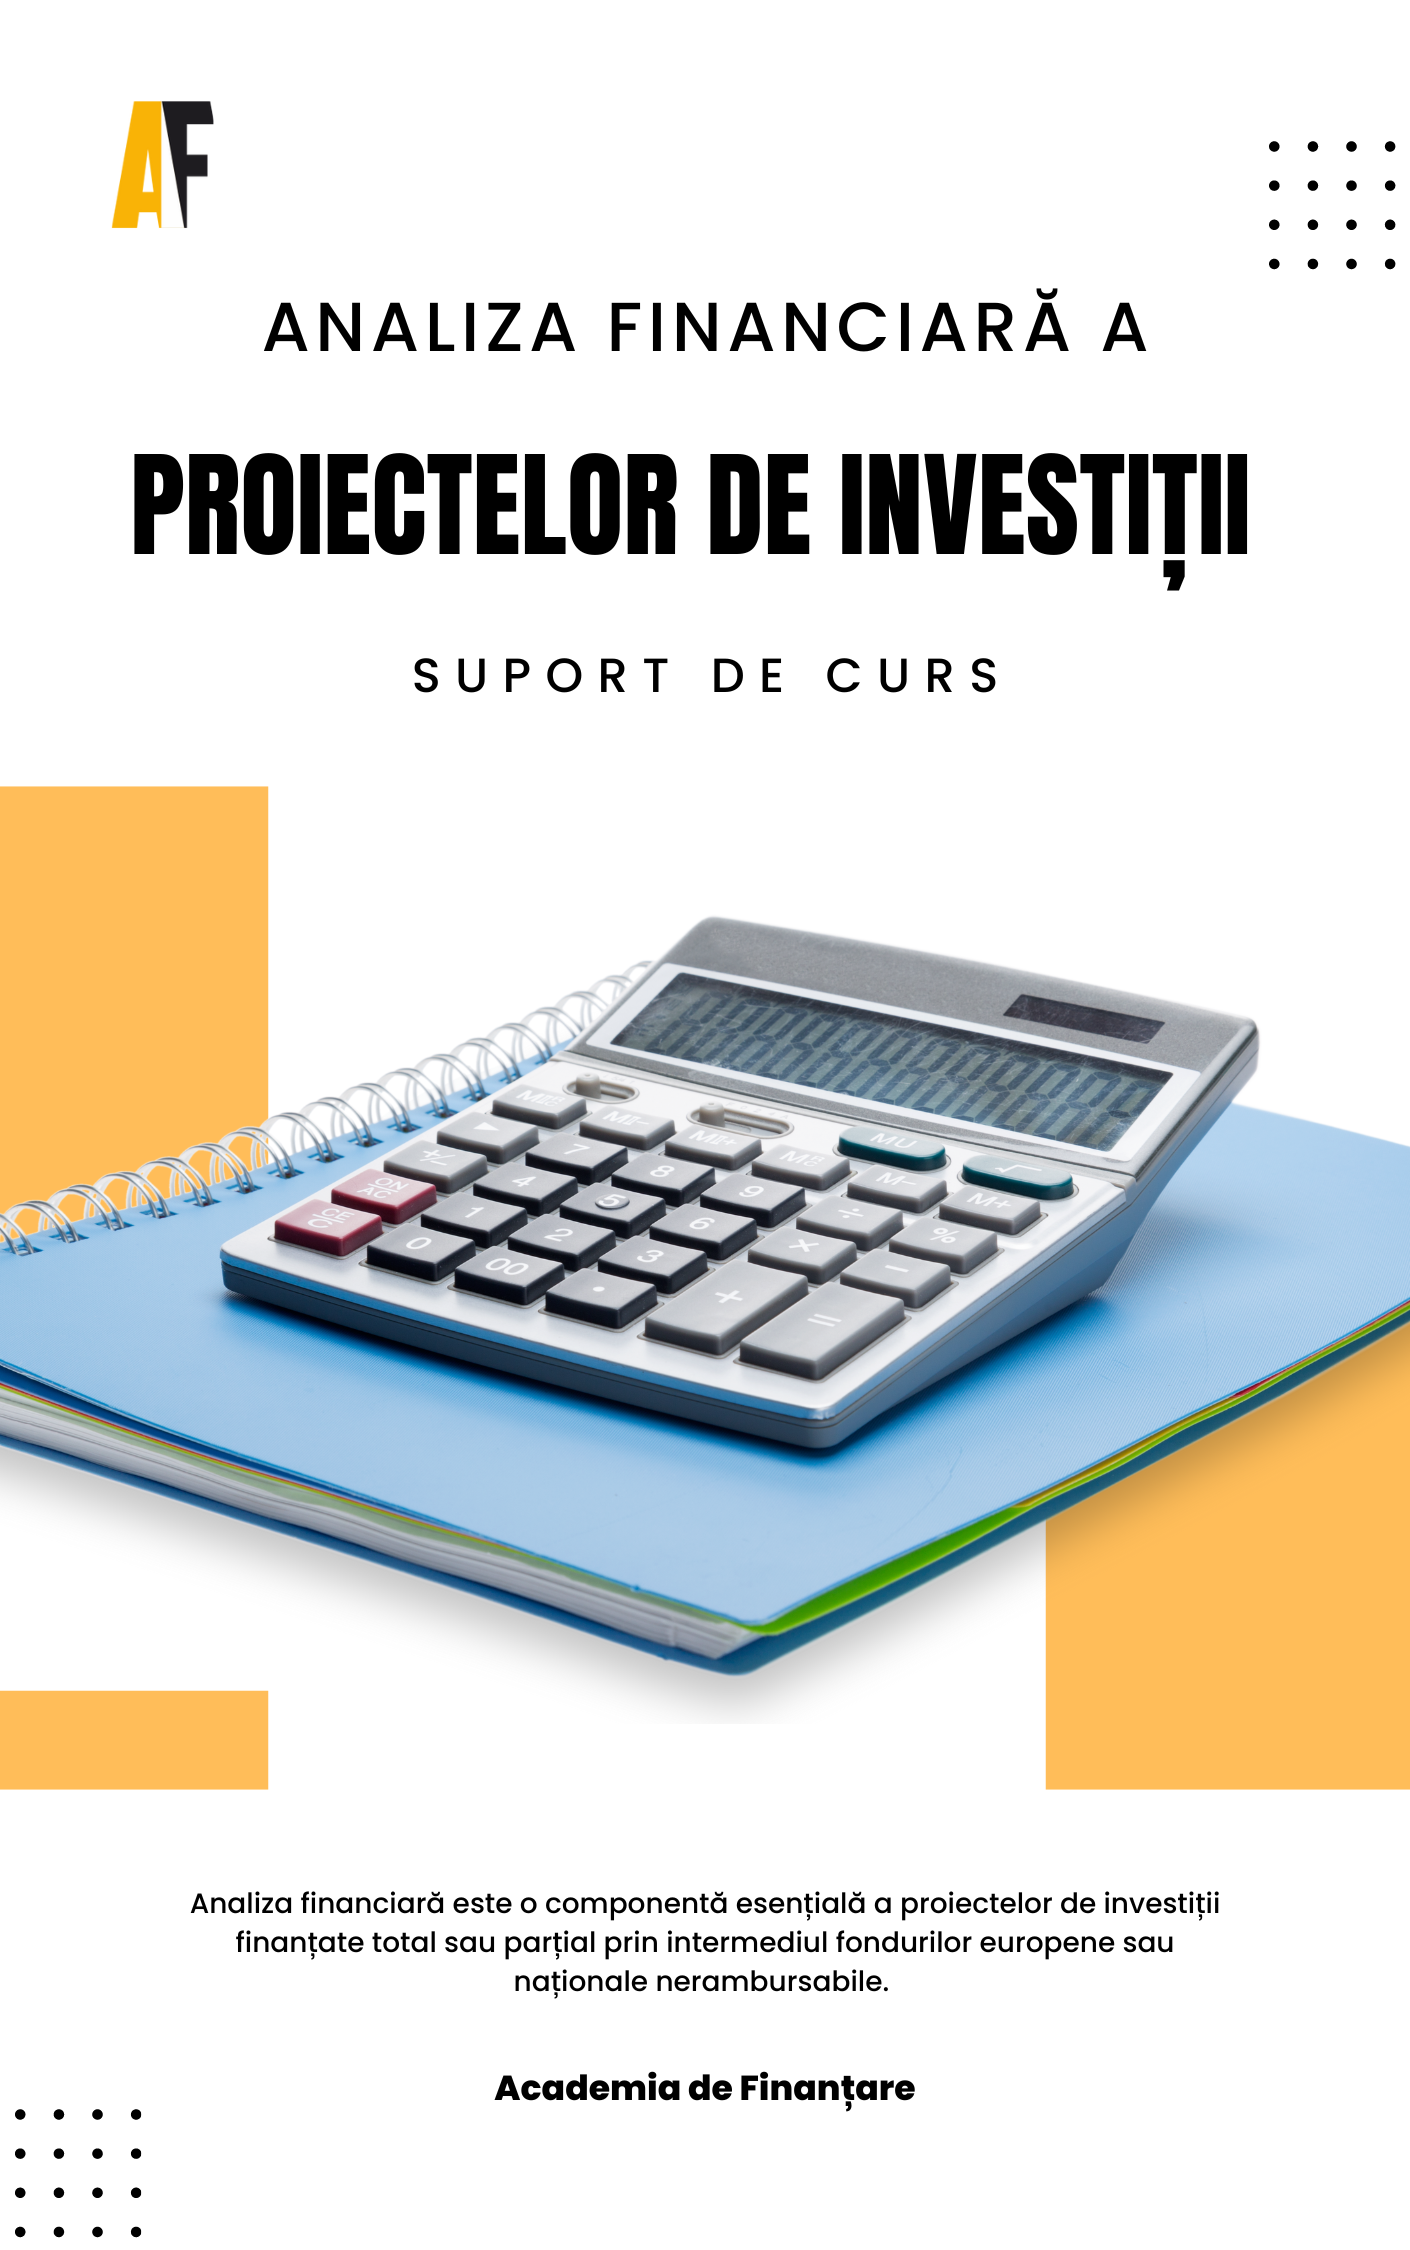 Analiza financiară a proiectelor de investiții suport de curs